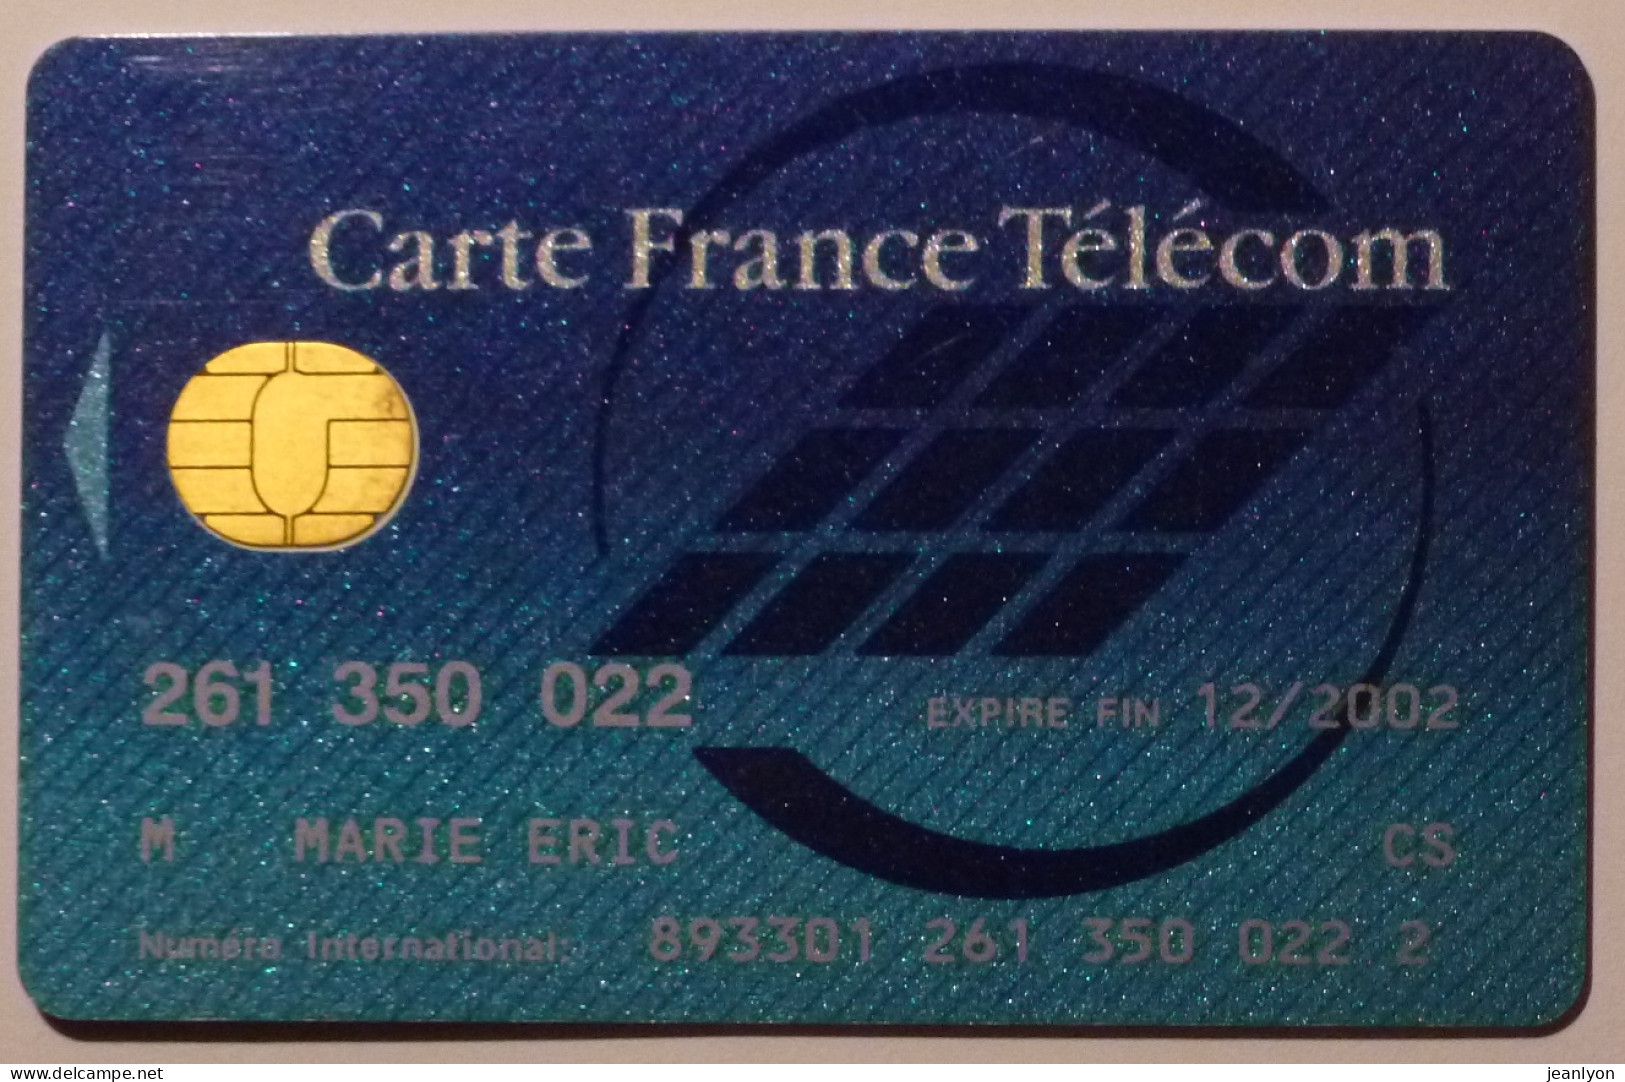 CARTE FRANCE TELECOM - Expire En 2002 - Operatori Telecom